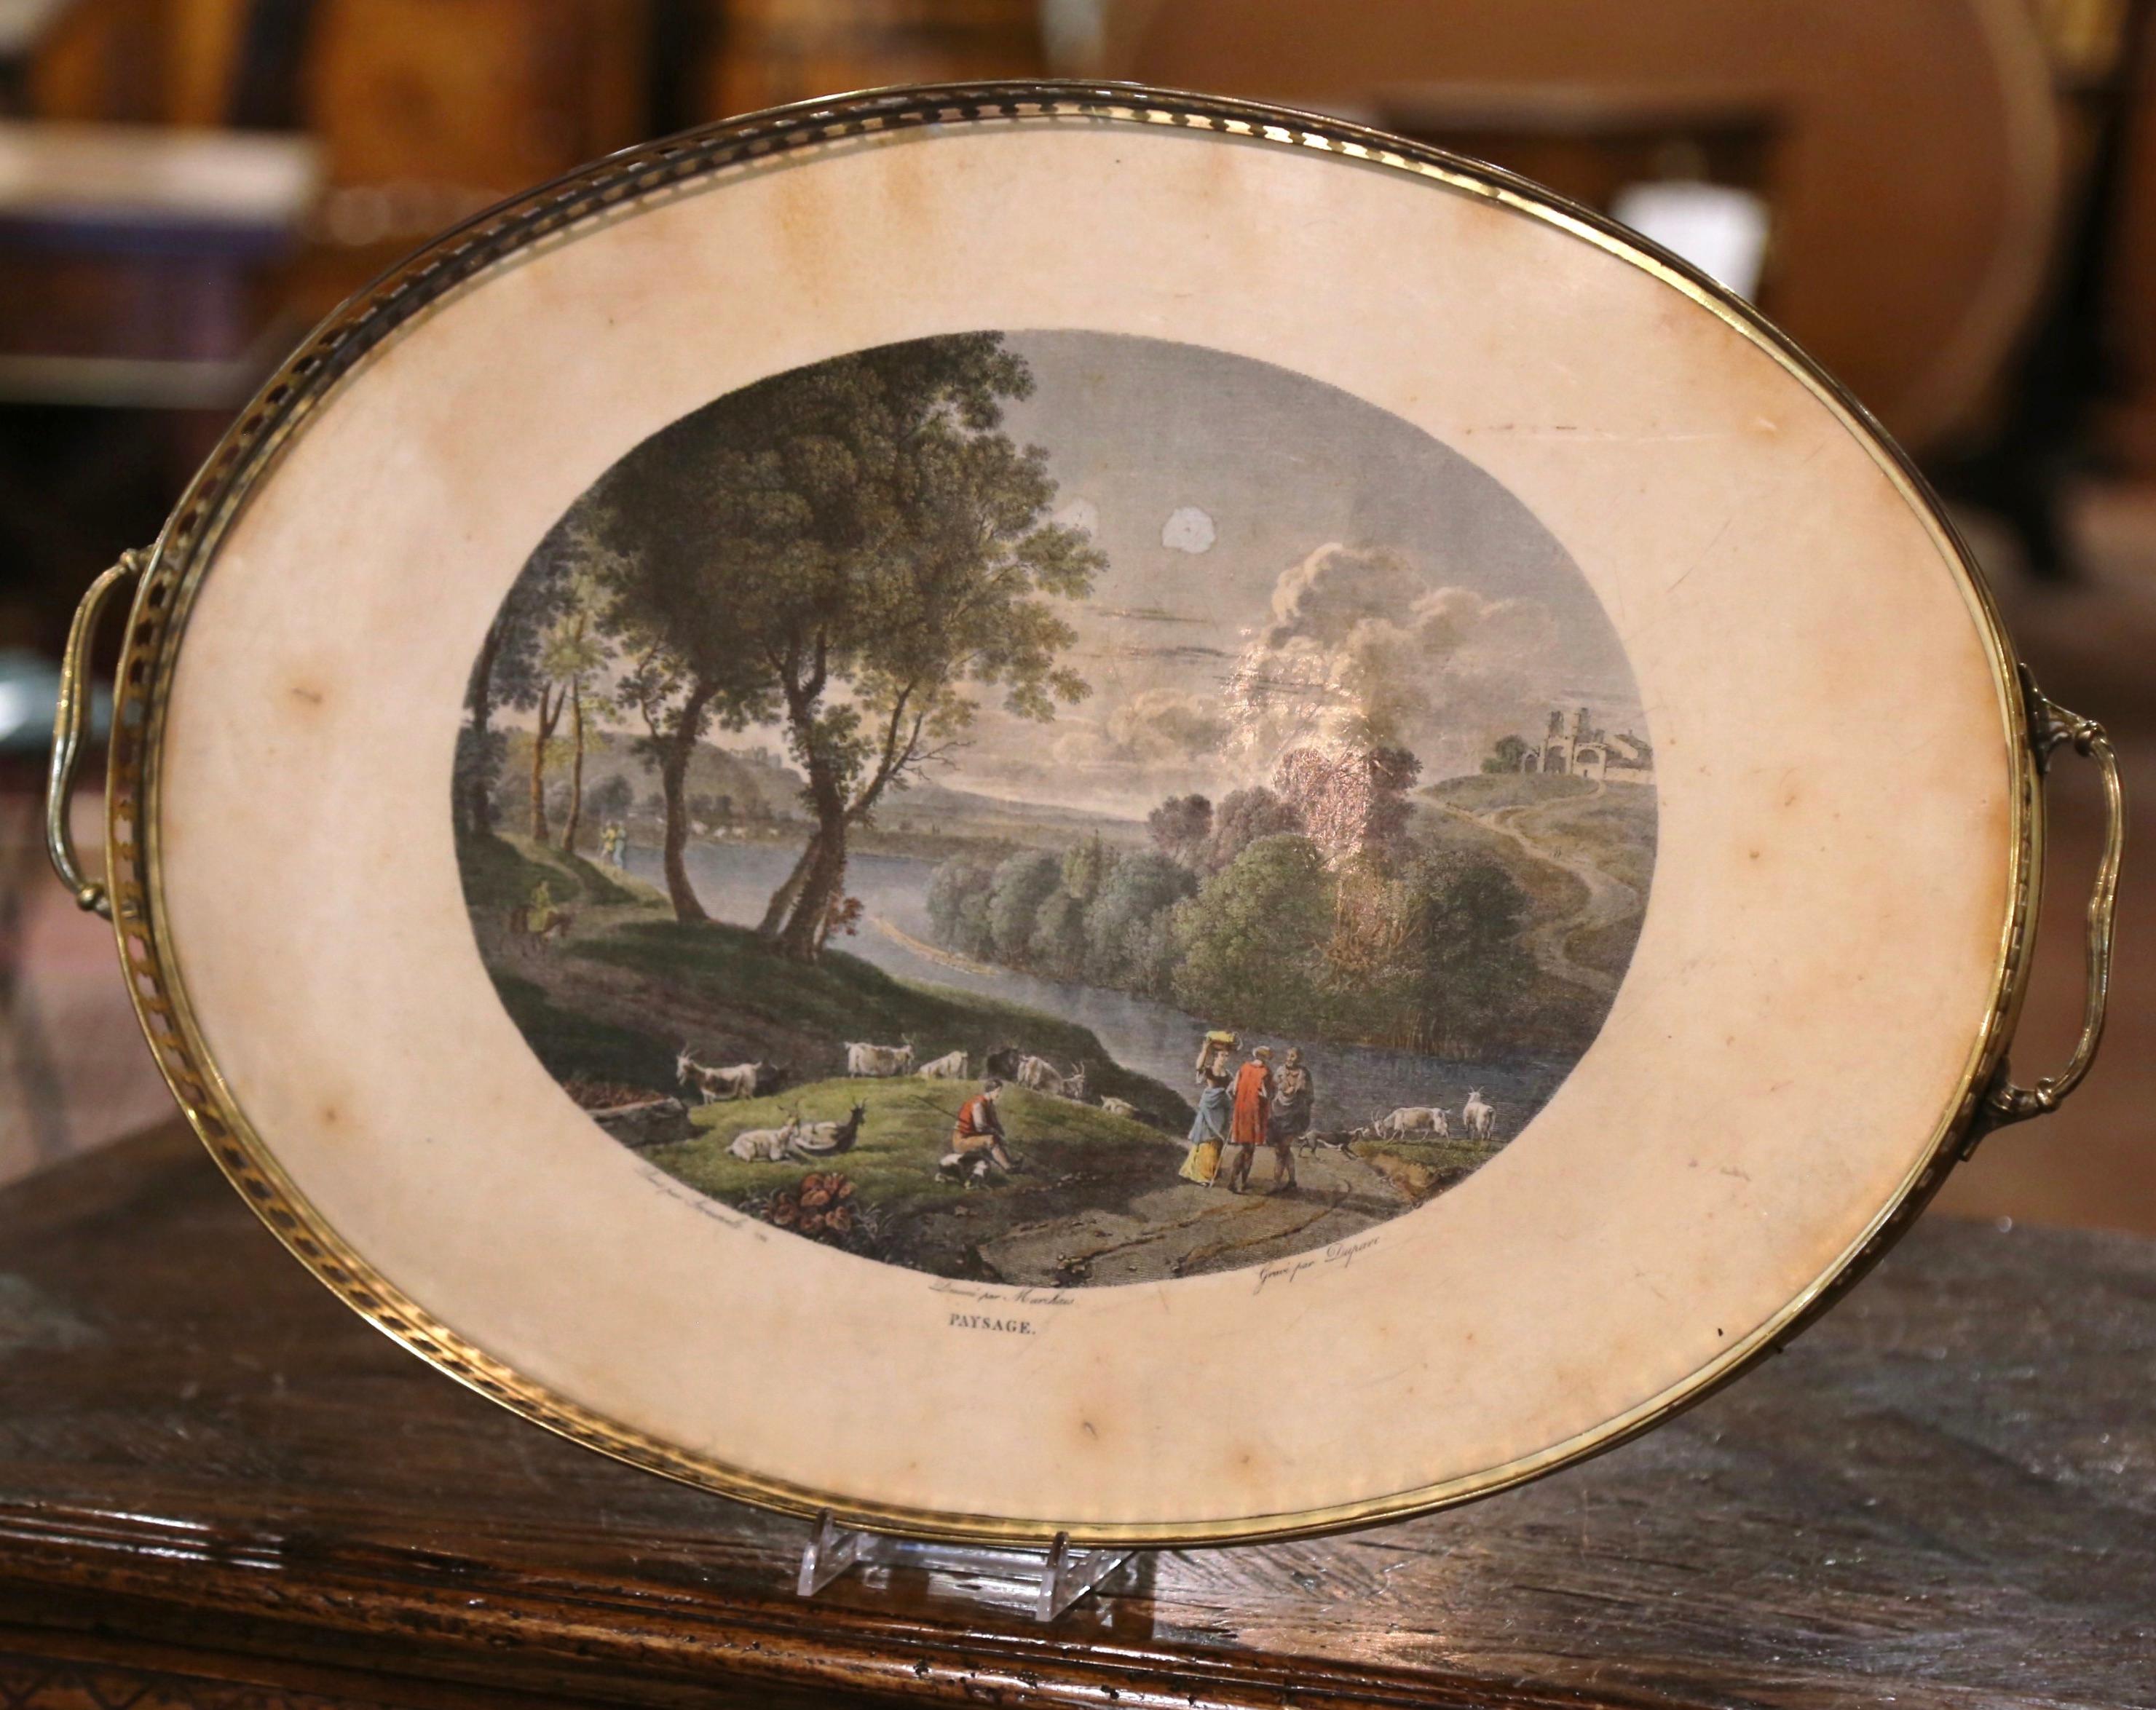 Stellen Sie dieses elegante antike Tablett auf einen Couchtisch oder in ein Hauptbadezimmer, um Schönheitsprodukte zu präsentieren. Die um 1870 in Frankreich gefertigte, ovale, farbenfrohe Platte mit durchbrochenen Seitengriffen ist mit einer